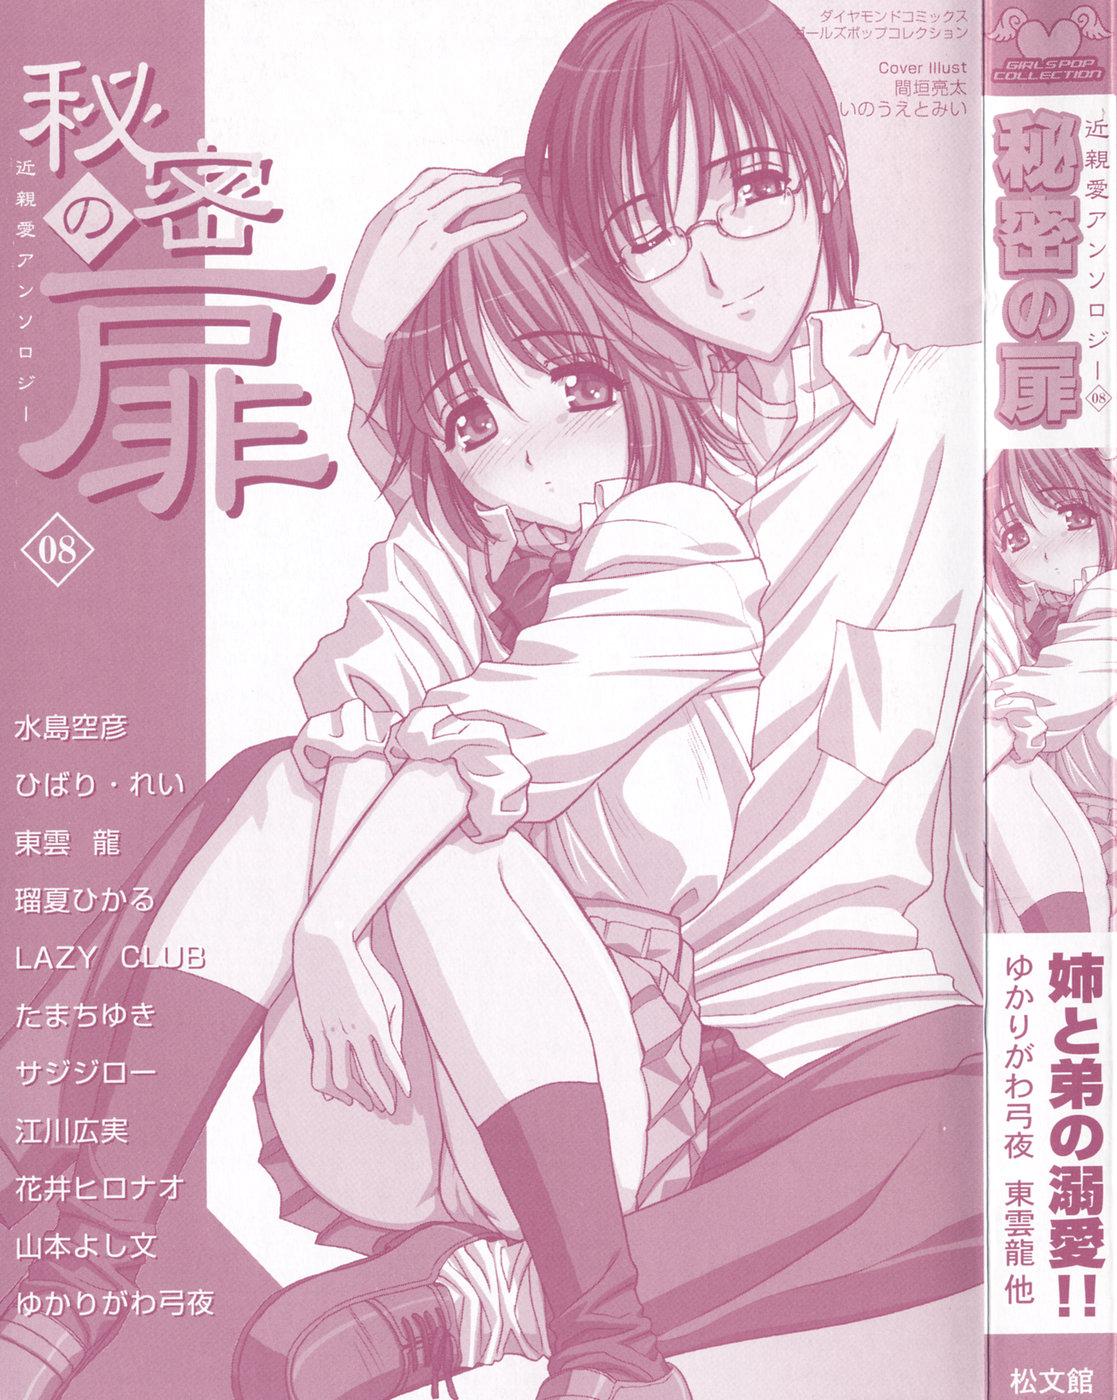 Pervert Himitsu no Tobira Vol.8 | The Secret Door Vol.8 Clothed - Page 2